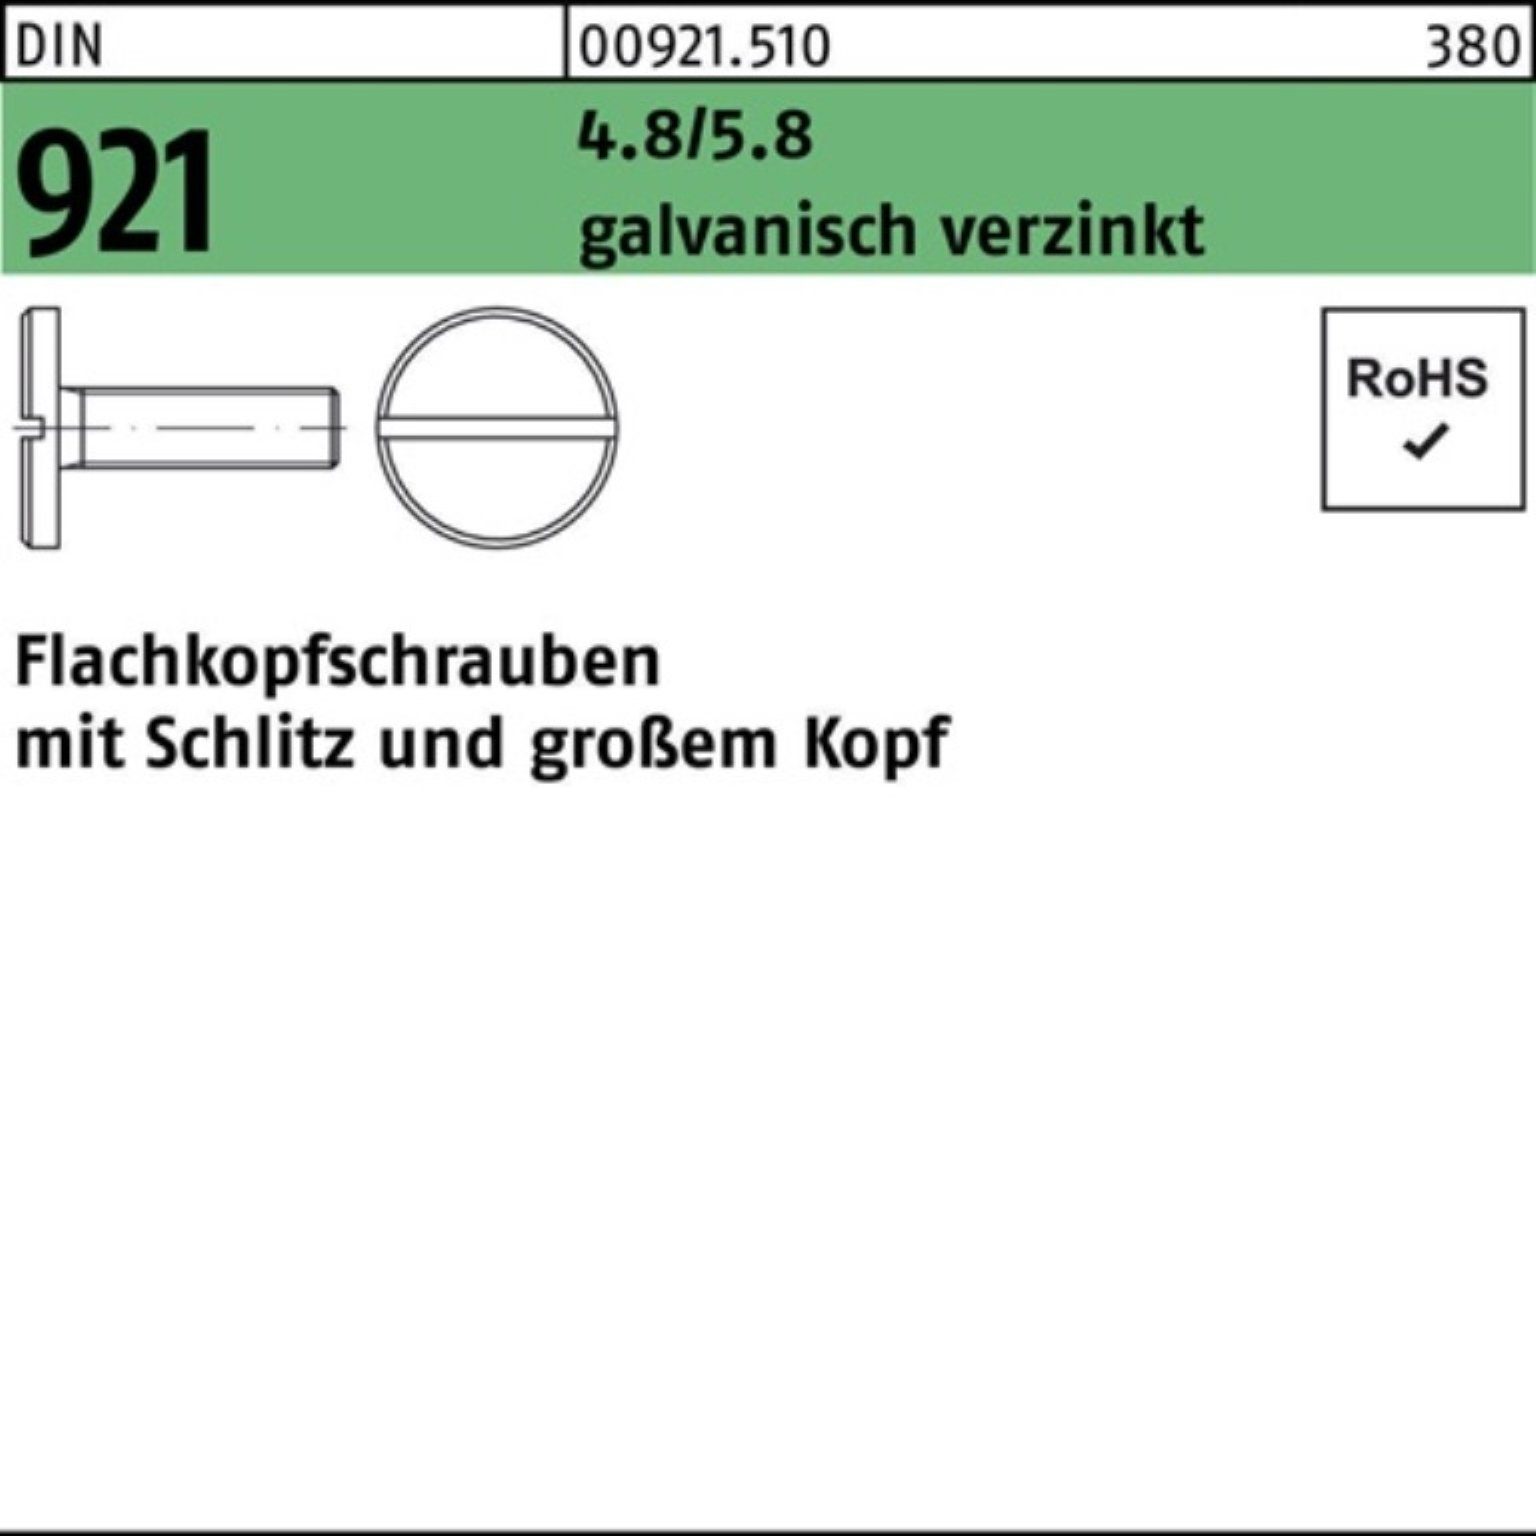 Schlitz Pack 100er 4.8/5.8 Flachkopfschraube 12 M6x DIN Schraube 921 galv.verz. Reyher